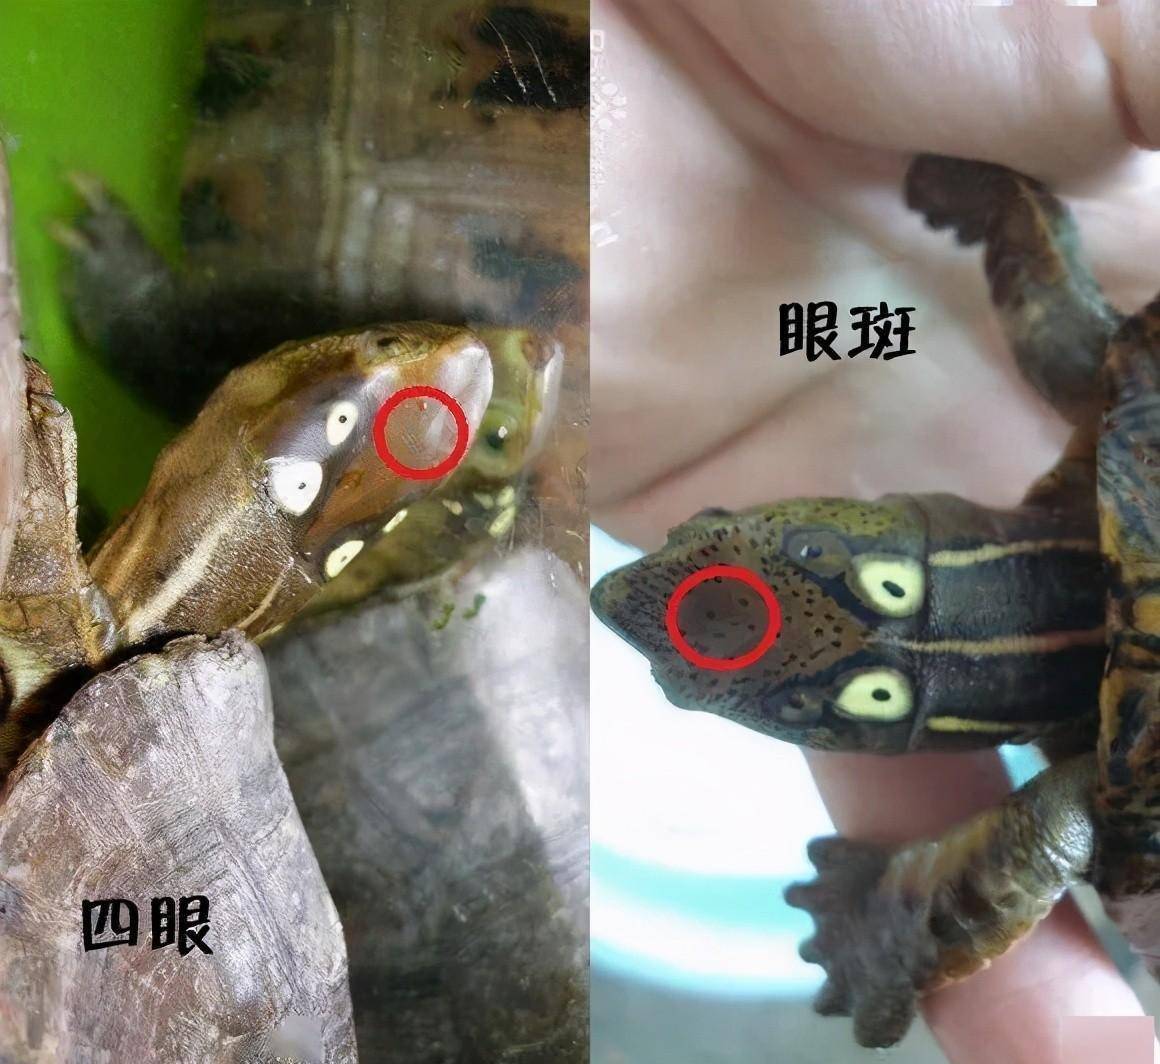 眼斑水龟和四眼斑水龟的头部对比四眼斑水龟在我国的分布地和眼斑水龟